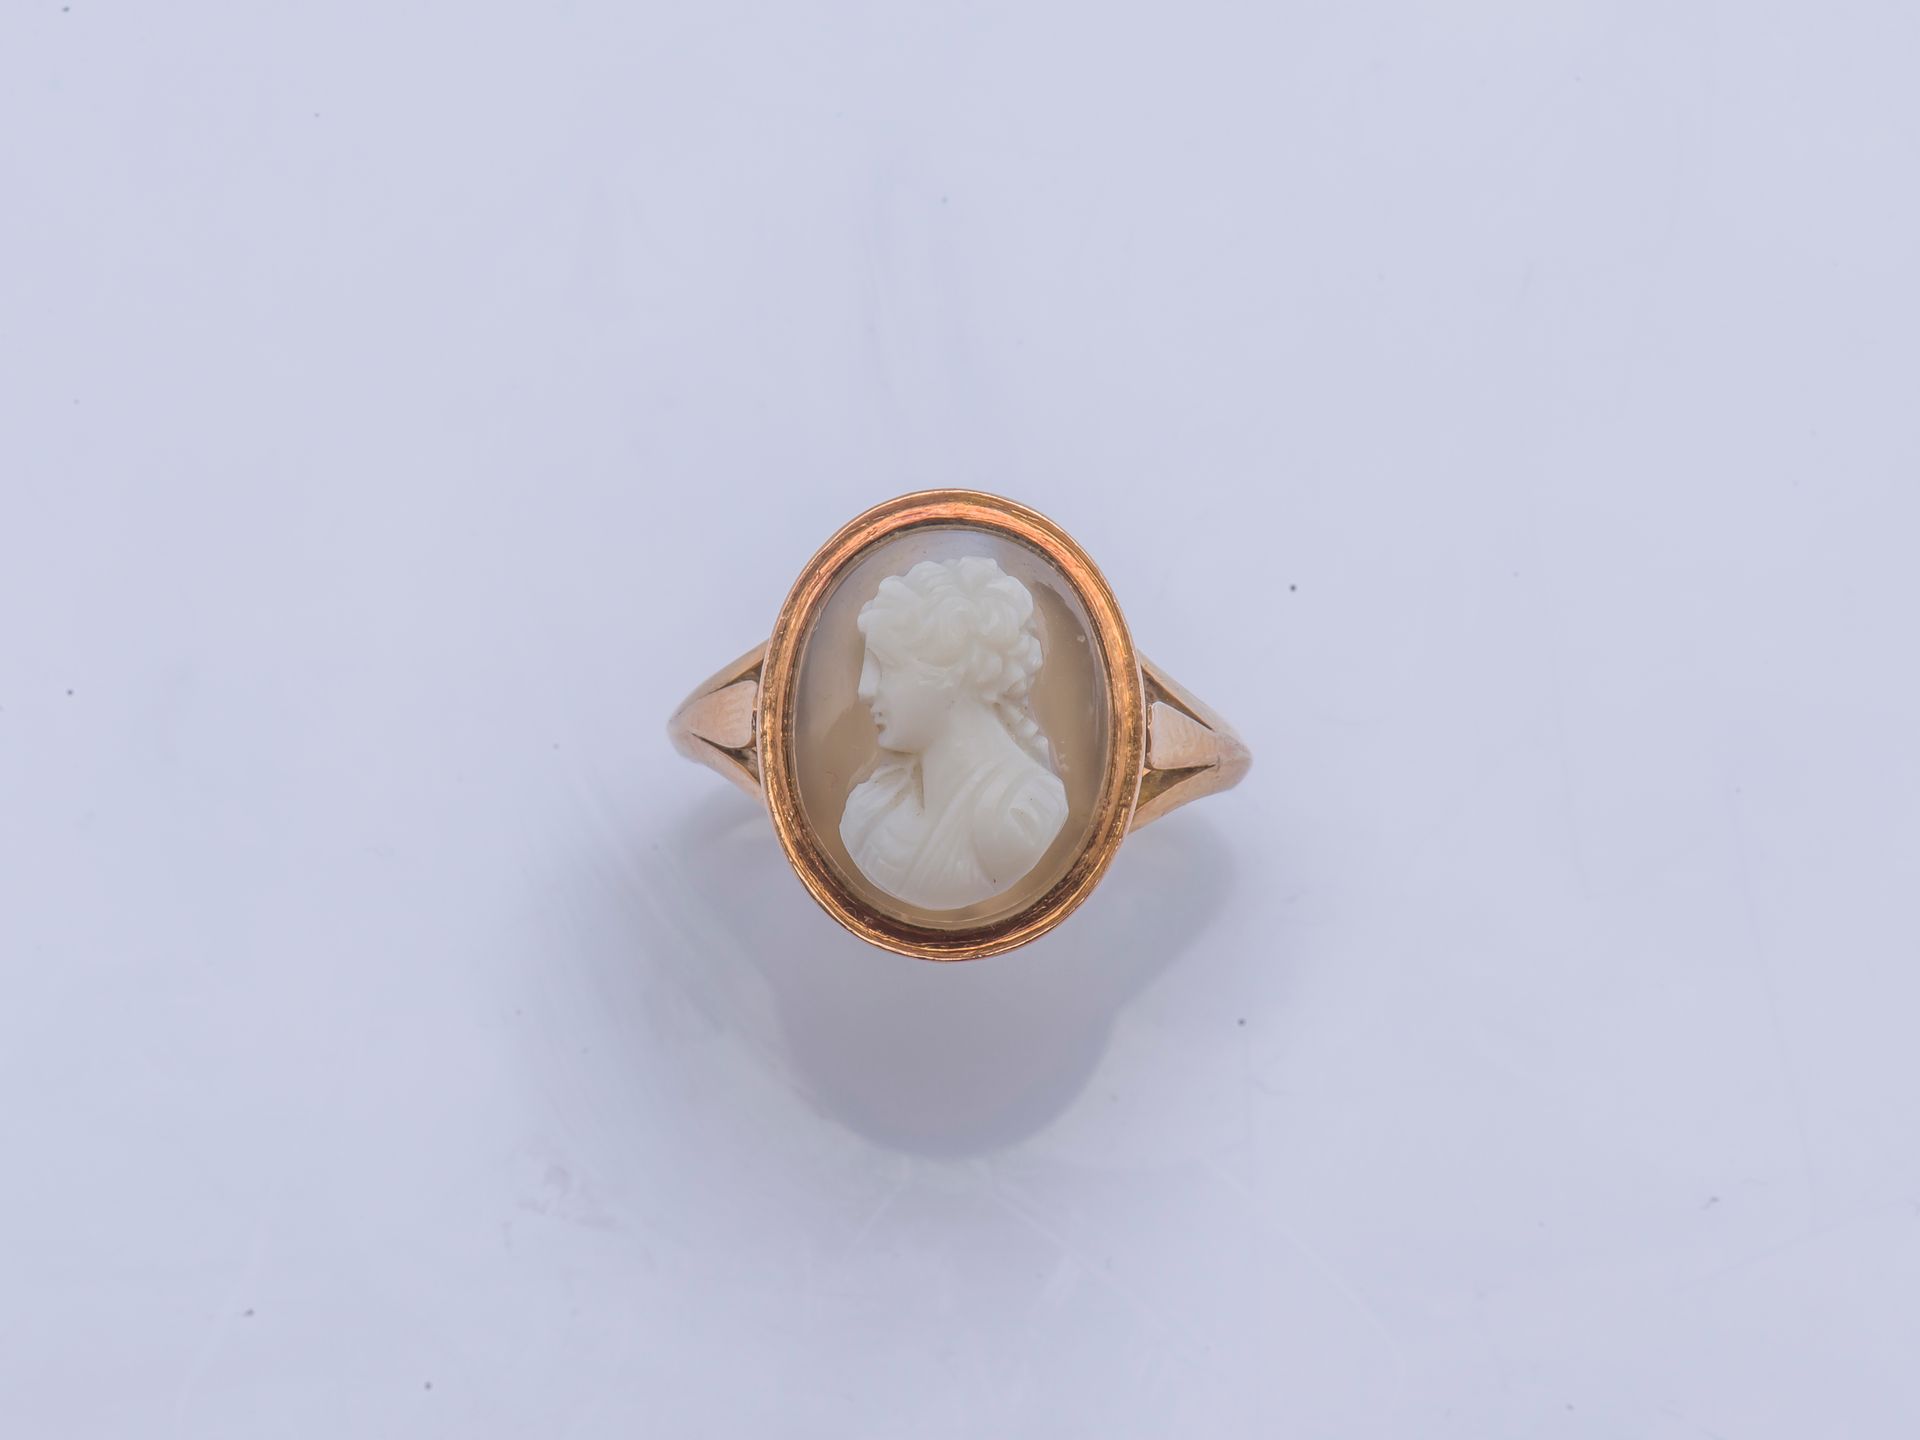 Null 14克拉（585千分之一）玫瑰金戒指上镶嵌着玛瑙浮雕，显示出一个女人的轮廓。

手指大小: 56 / 57 毛重: 4,5 g